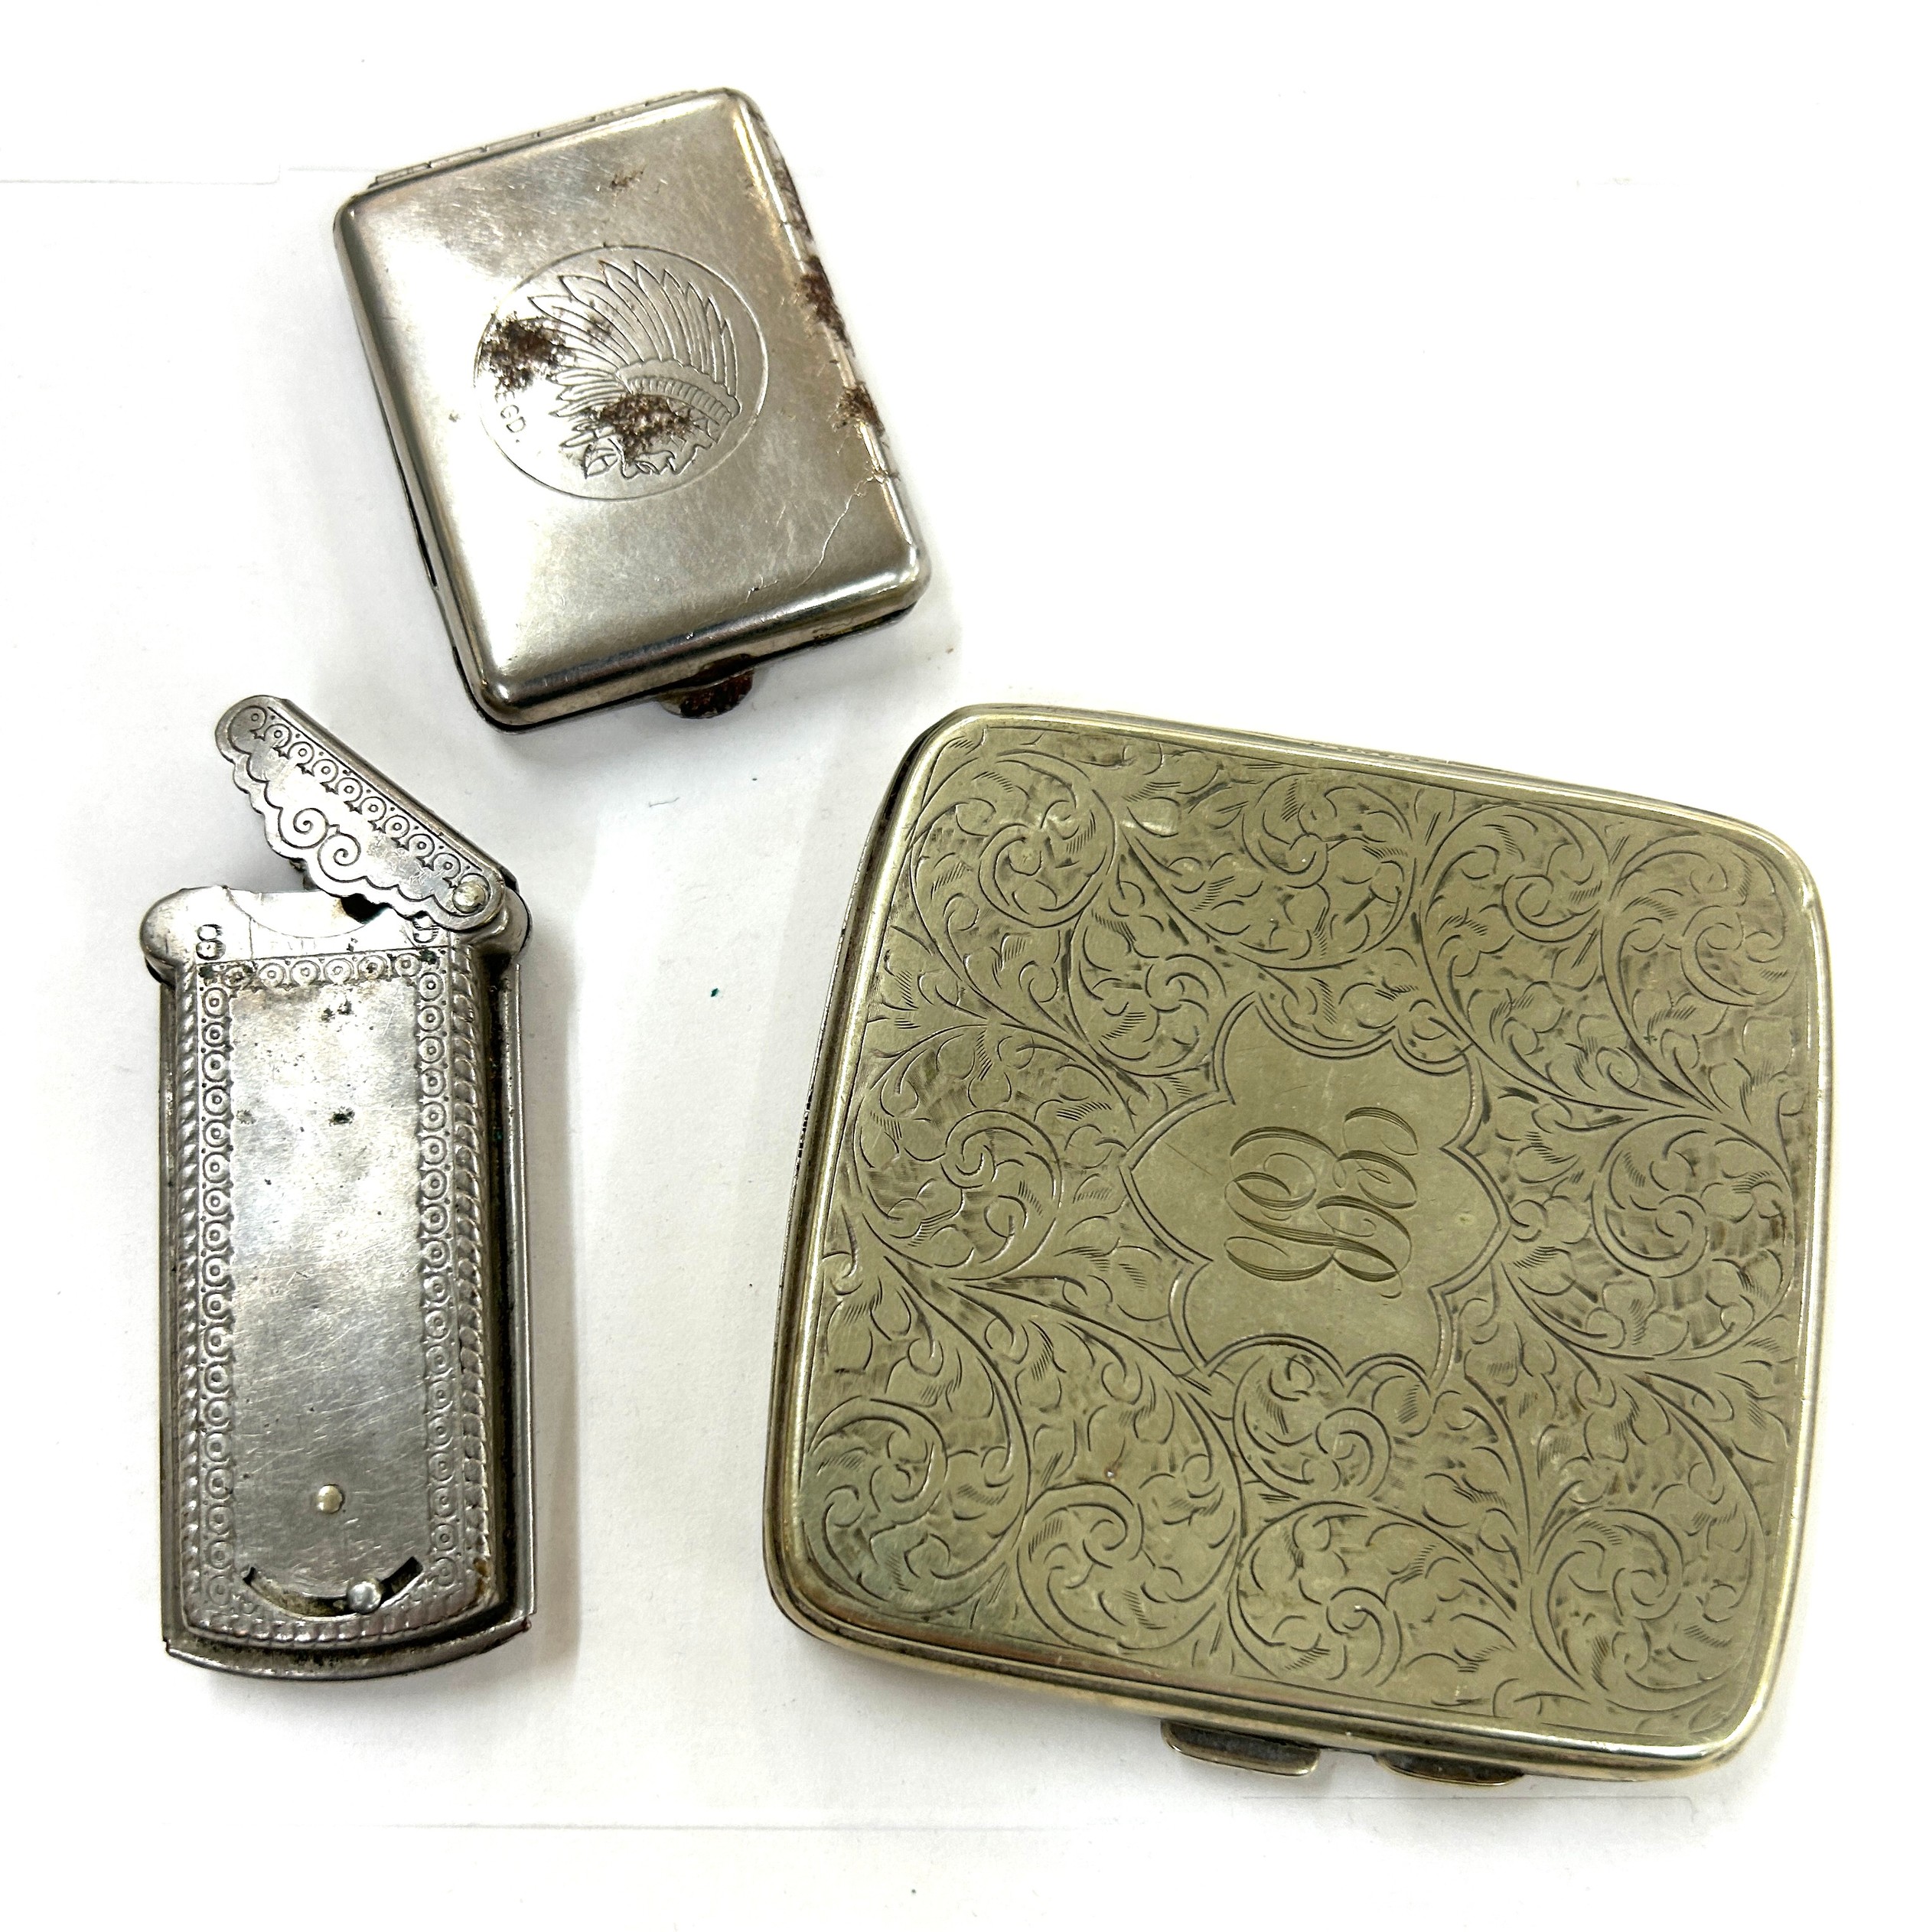 Vintage plated cigarette case, razor blade holder etc